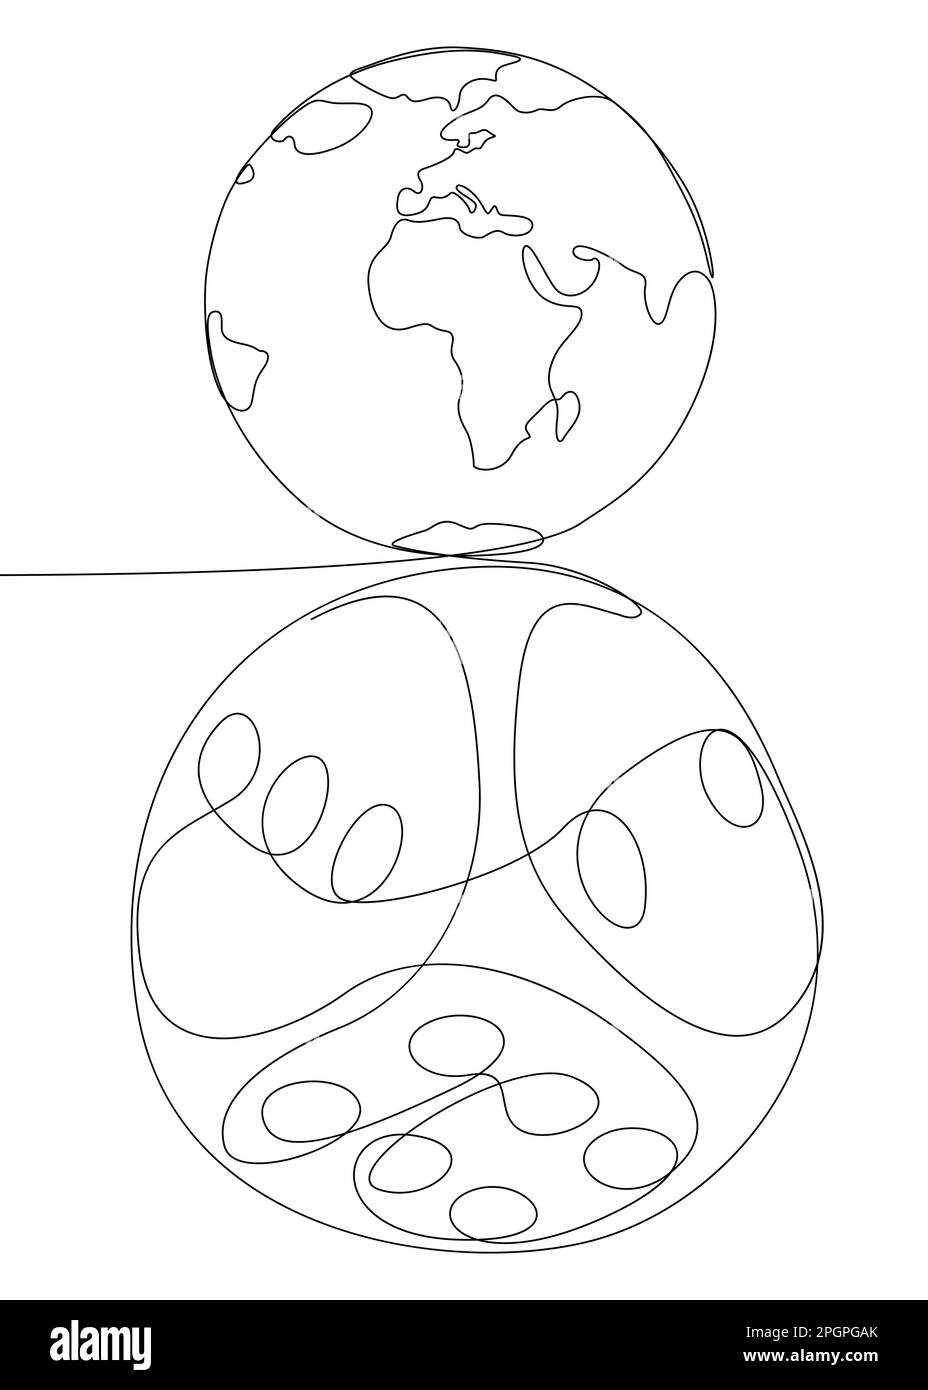 Une ligne continue de Earth Globe et de Dice. Concept de vecteur d'illustration à trait fin. Dessin de contour idées créatives. Illustration de Vecteur